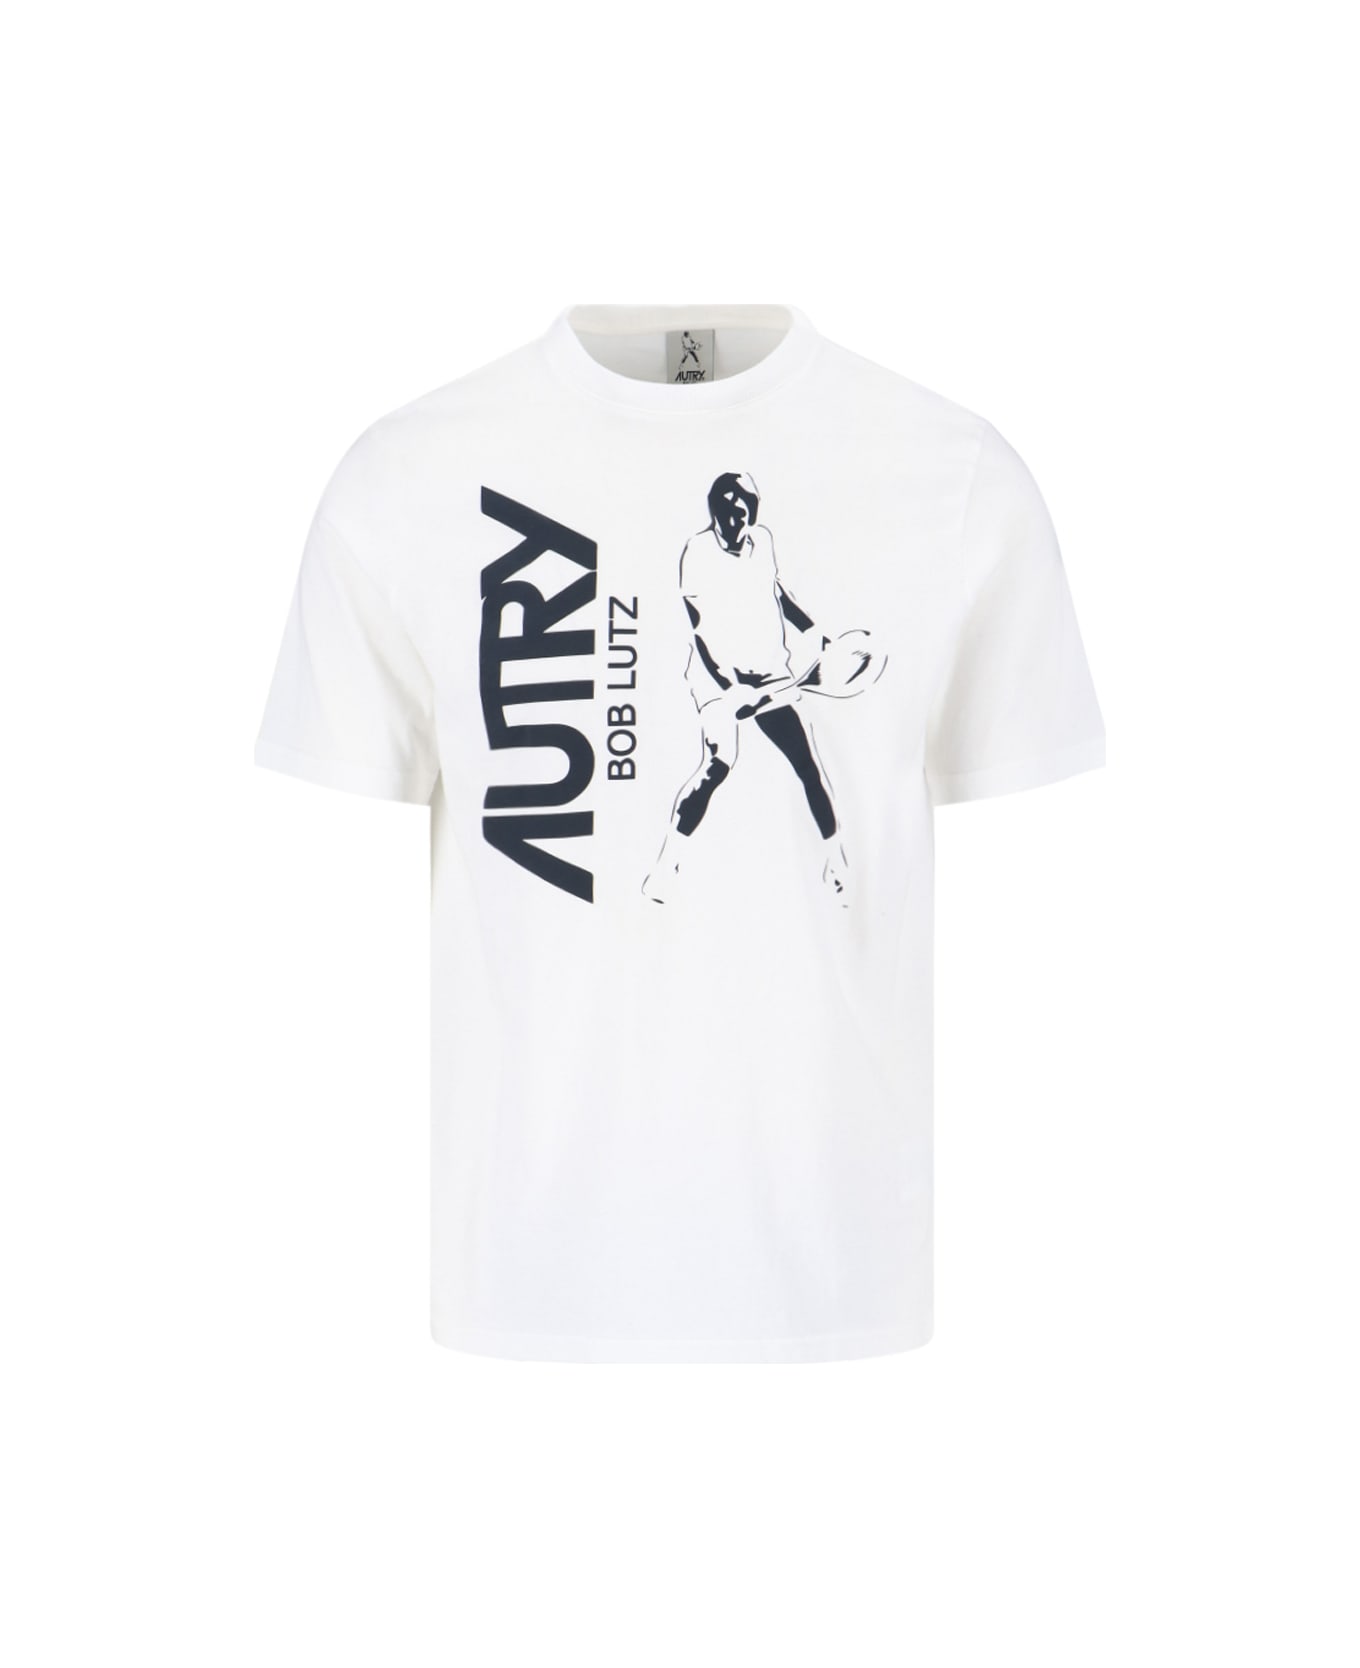 Autry Bob Lutz T-shirt - White シャツ